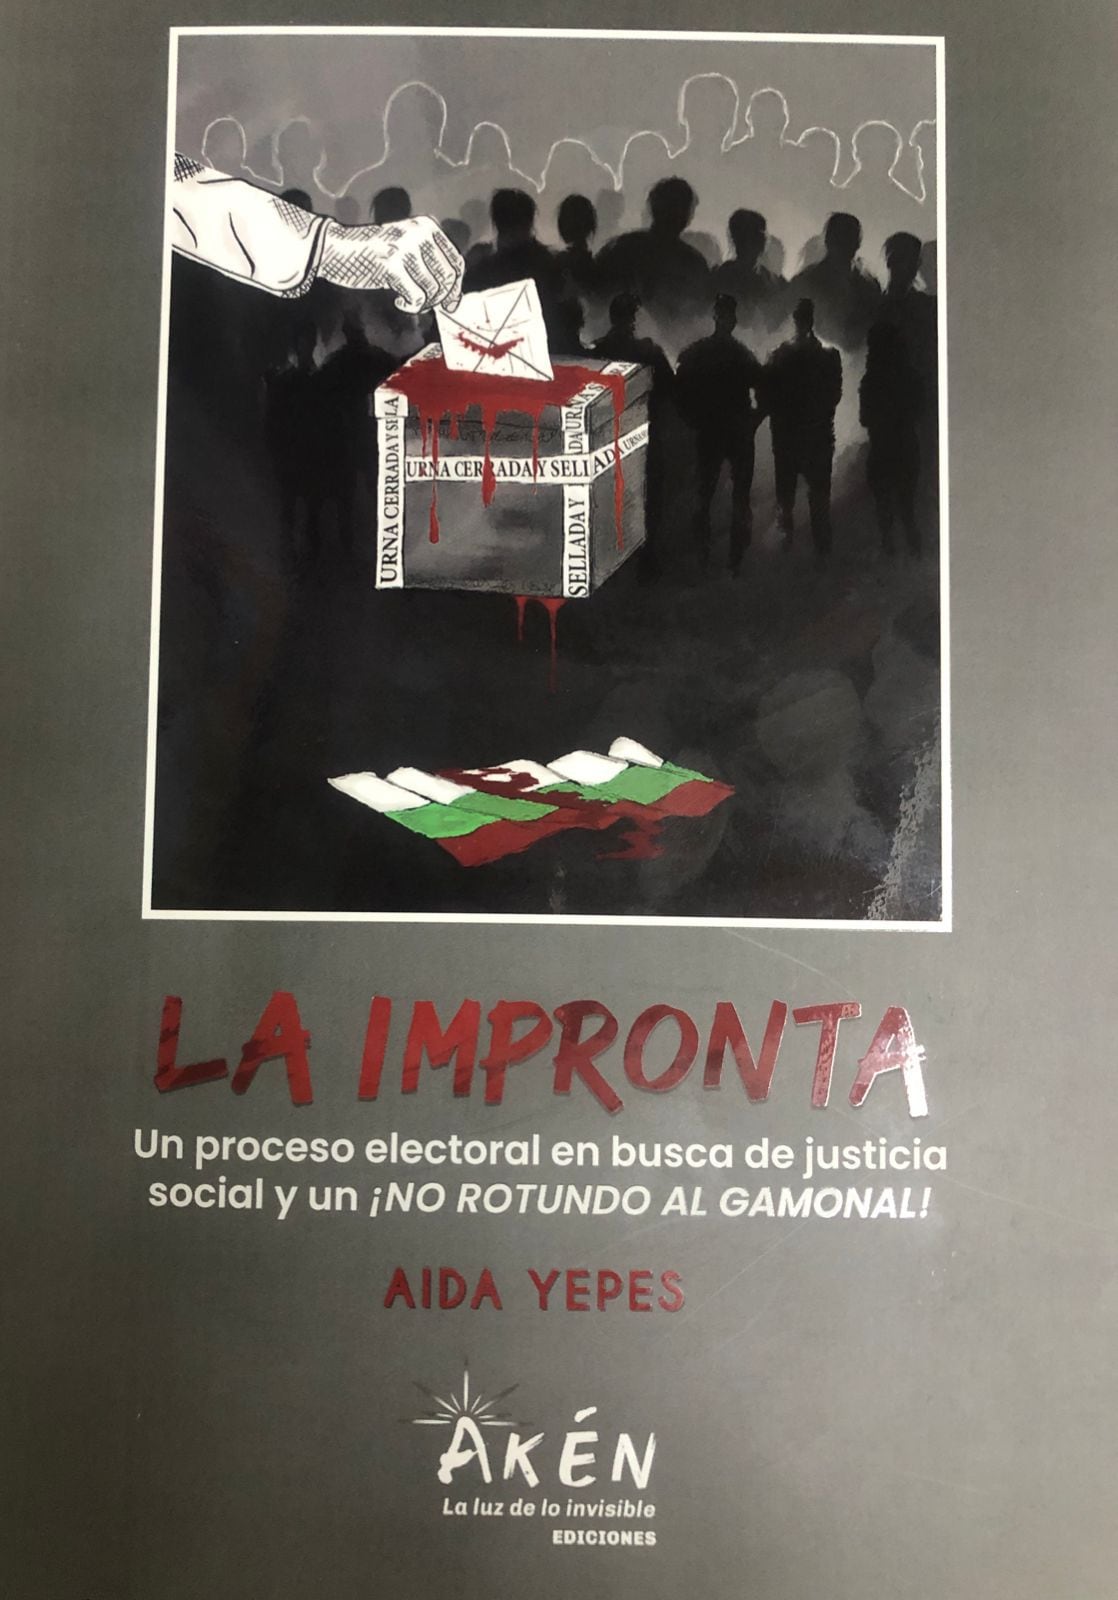 La novela de Aída Yepes presenta una radiografía de lo que ha sido la historia de las elecciones en Colombia, y en especial, en el Valle del Cauca.